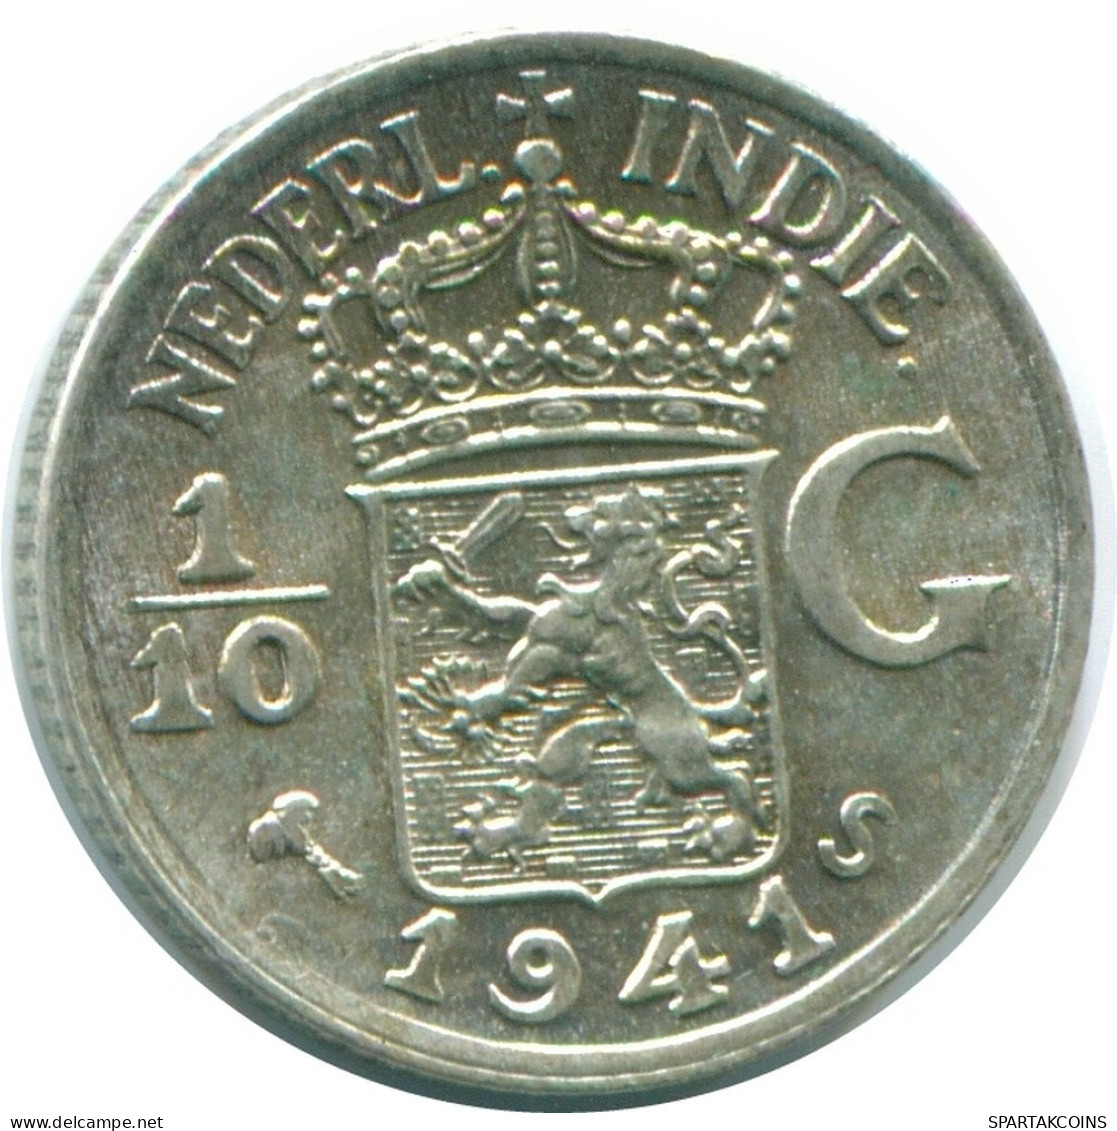 1/10 GULDEN 1941 S NIEDERLANDE OSTINDIEN SILBER Koloniale Münze #NL13642.3.D.A - Indie Olandesi